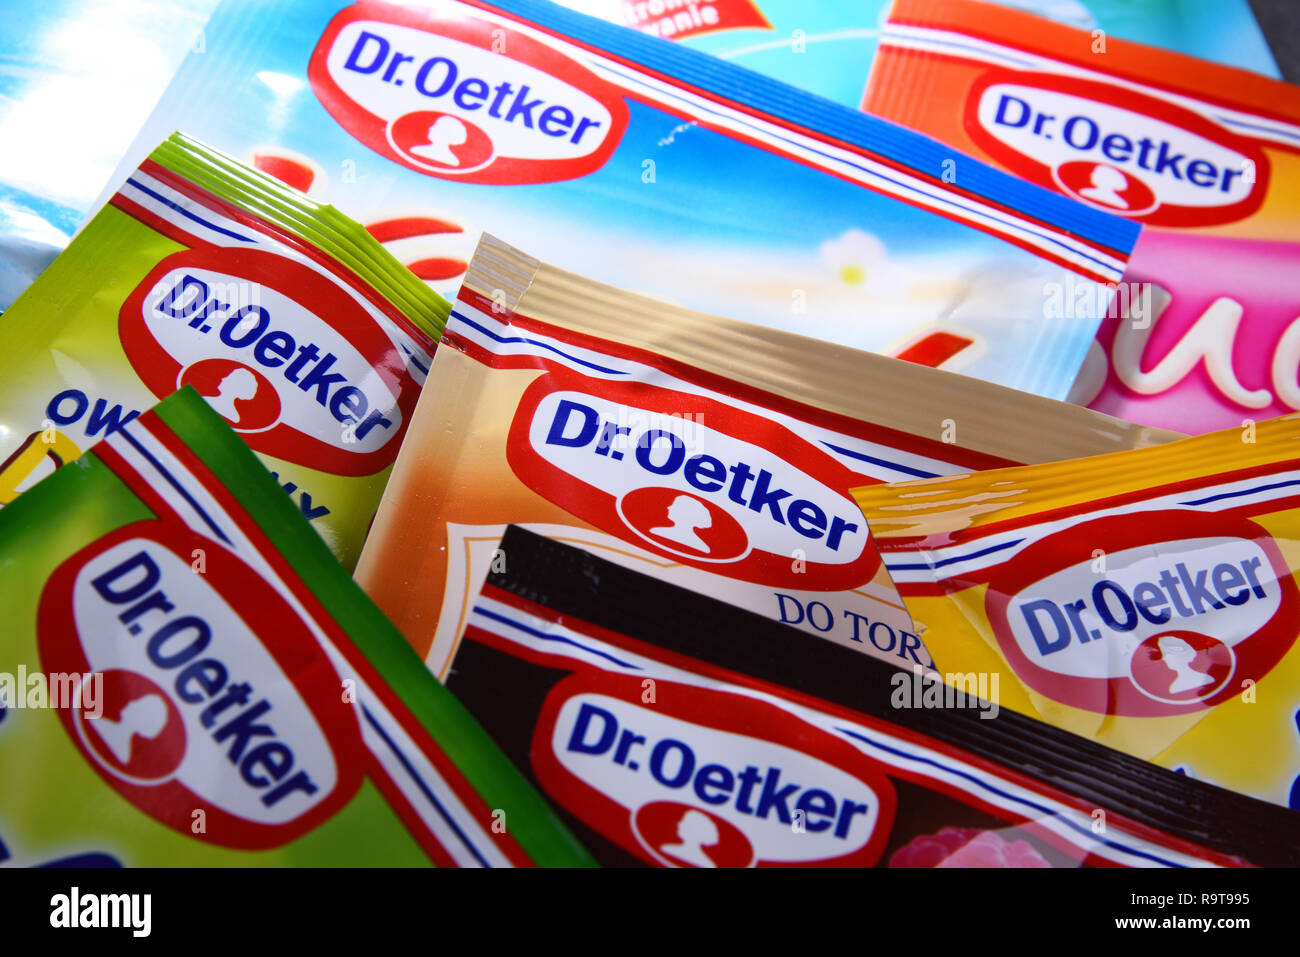 POZNAN, POL - Sep 28, 2018: Colli di Dr. Oetker prodotti, una multinazionale tedesca di proprietà del gruppo Oetker, con sede a Bielefeld, né Foto Stock